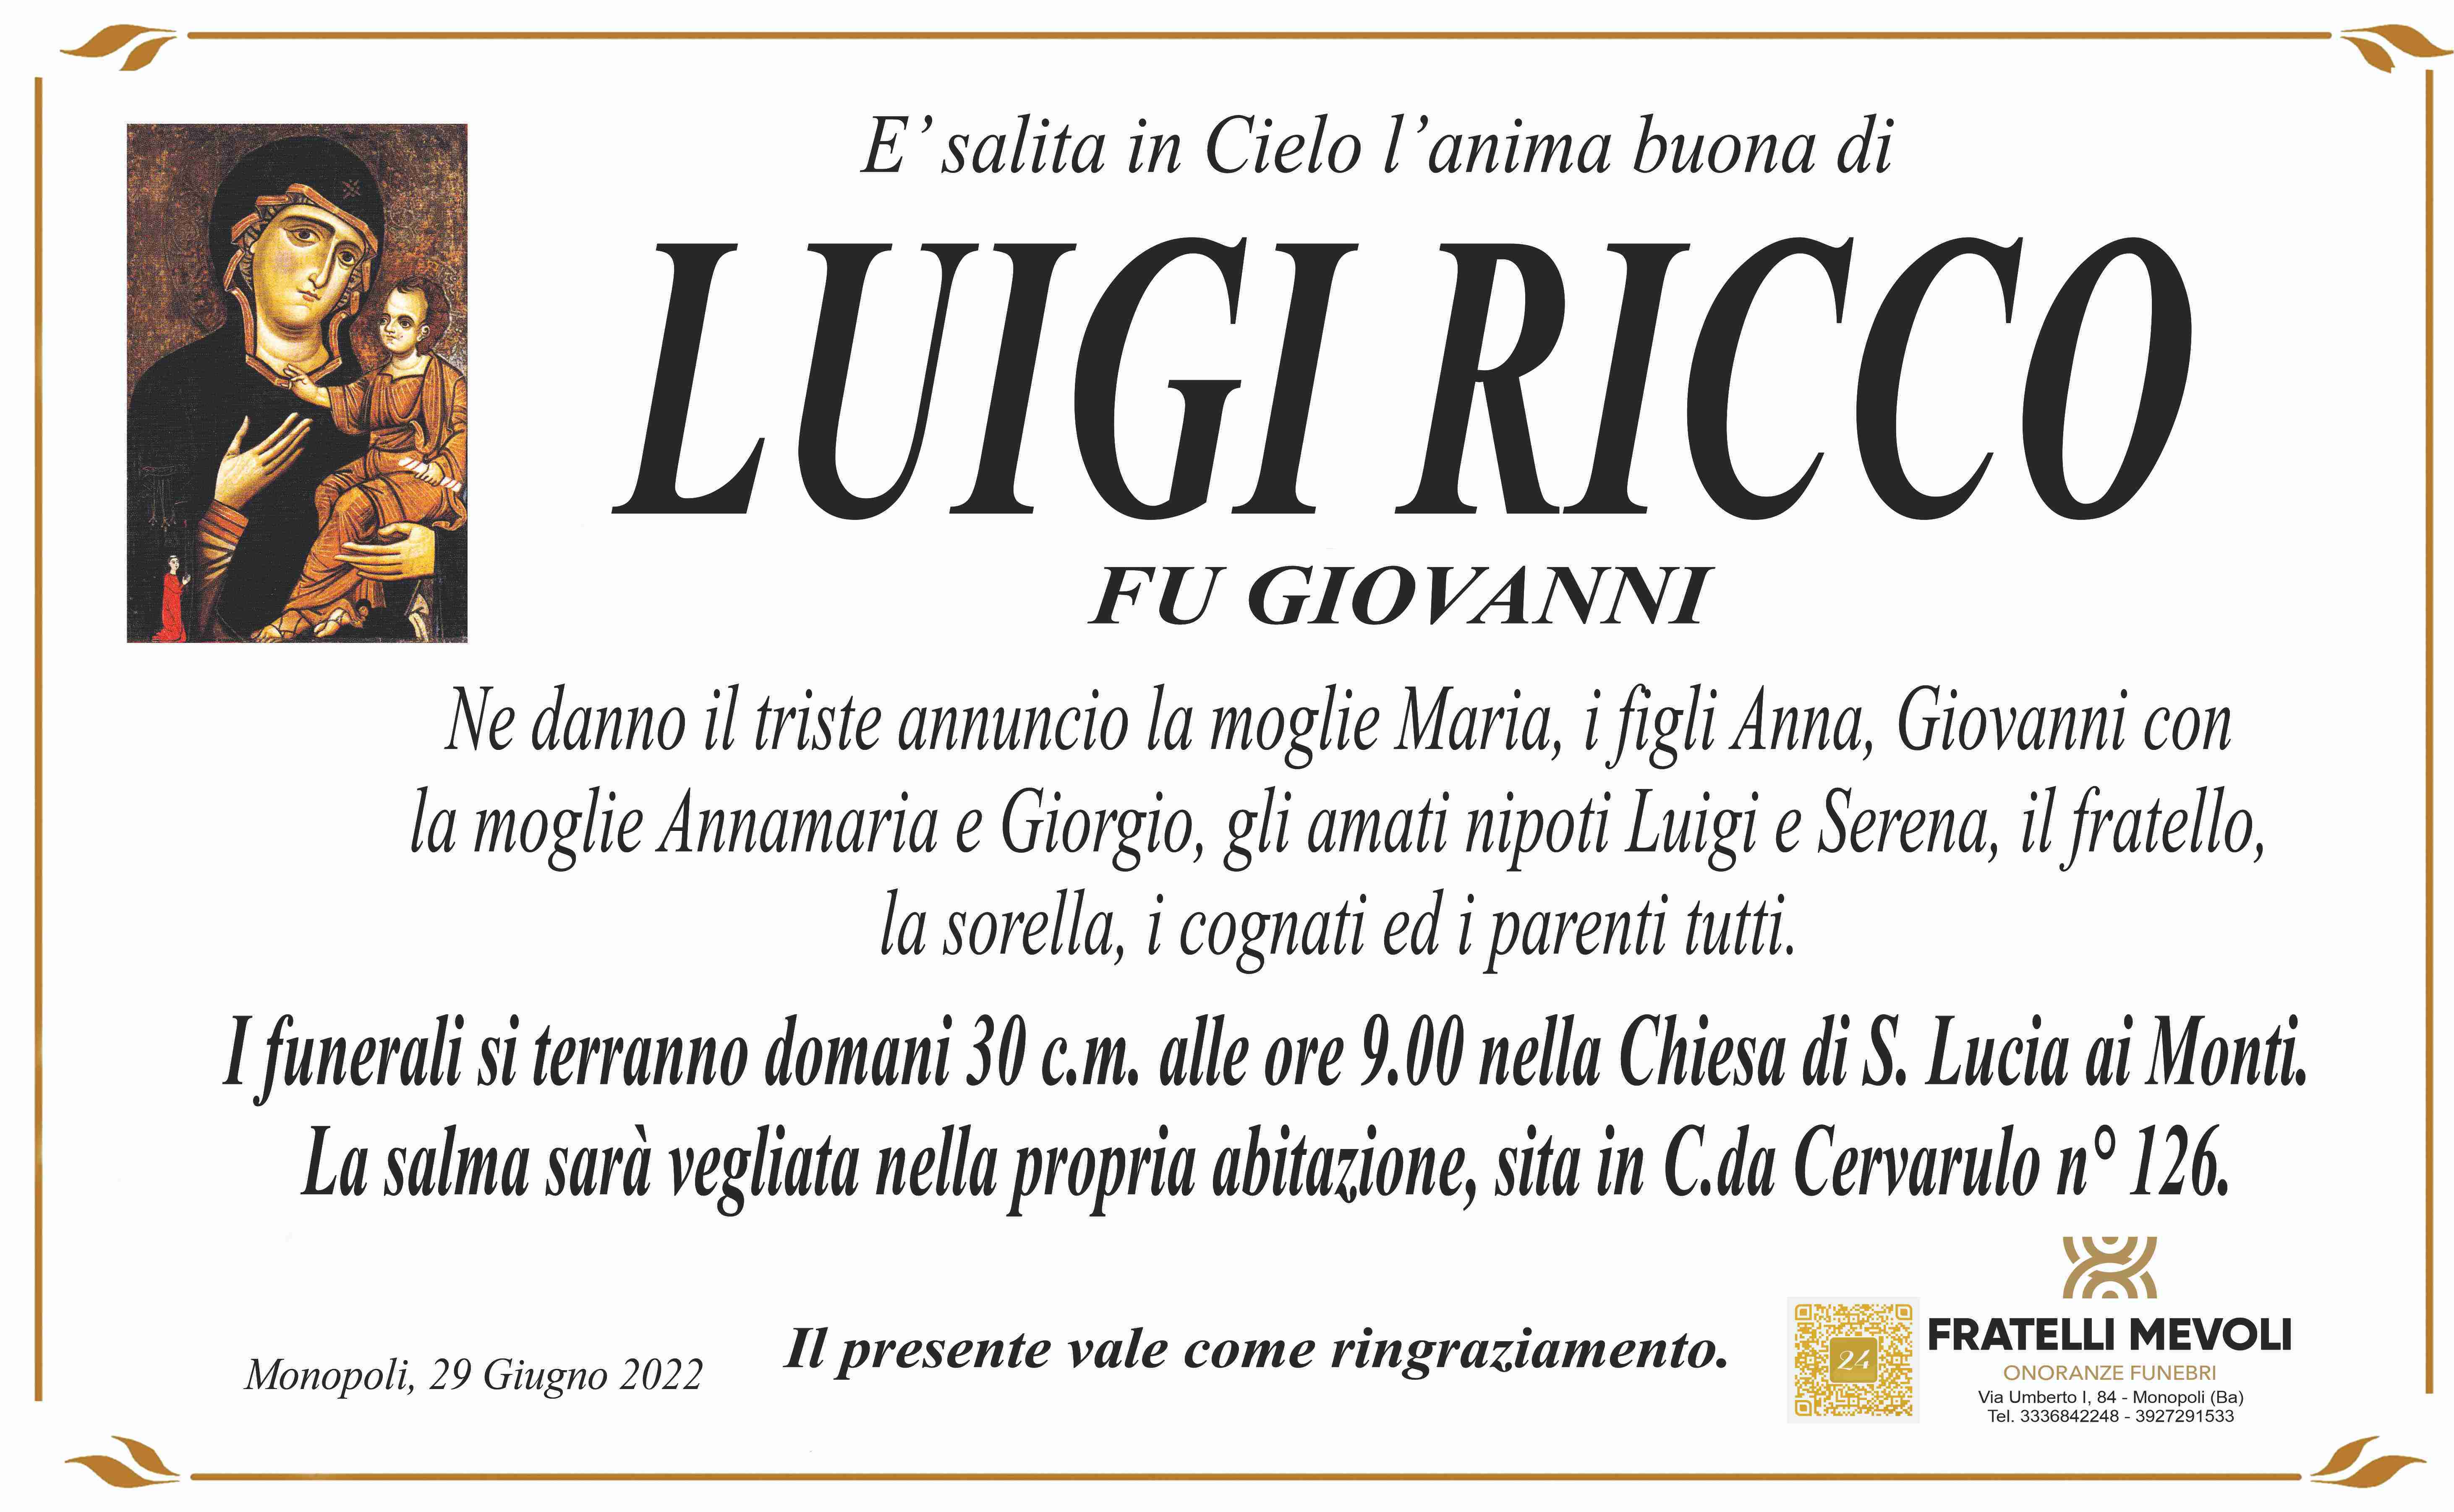 Luigi Ricco